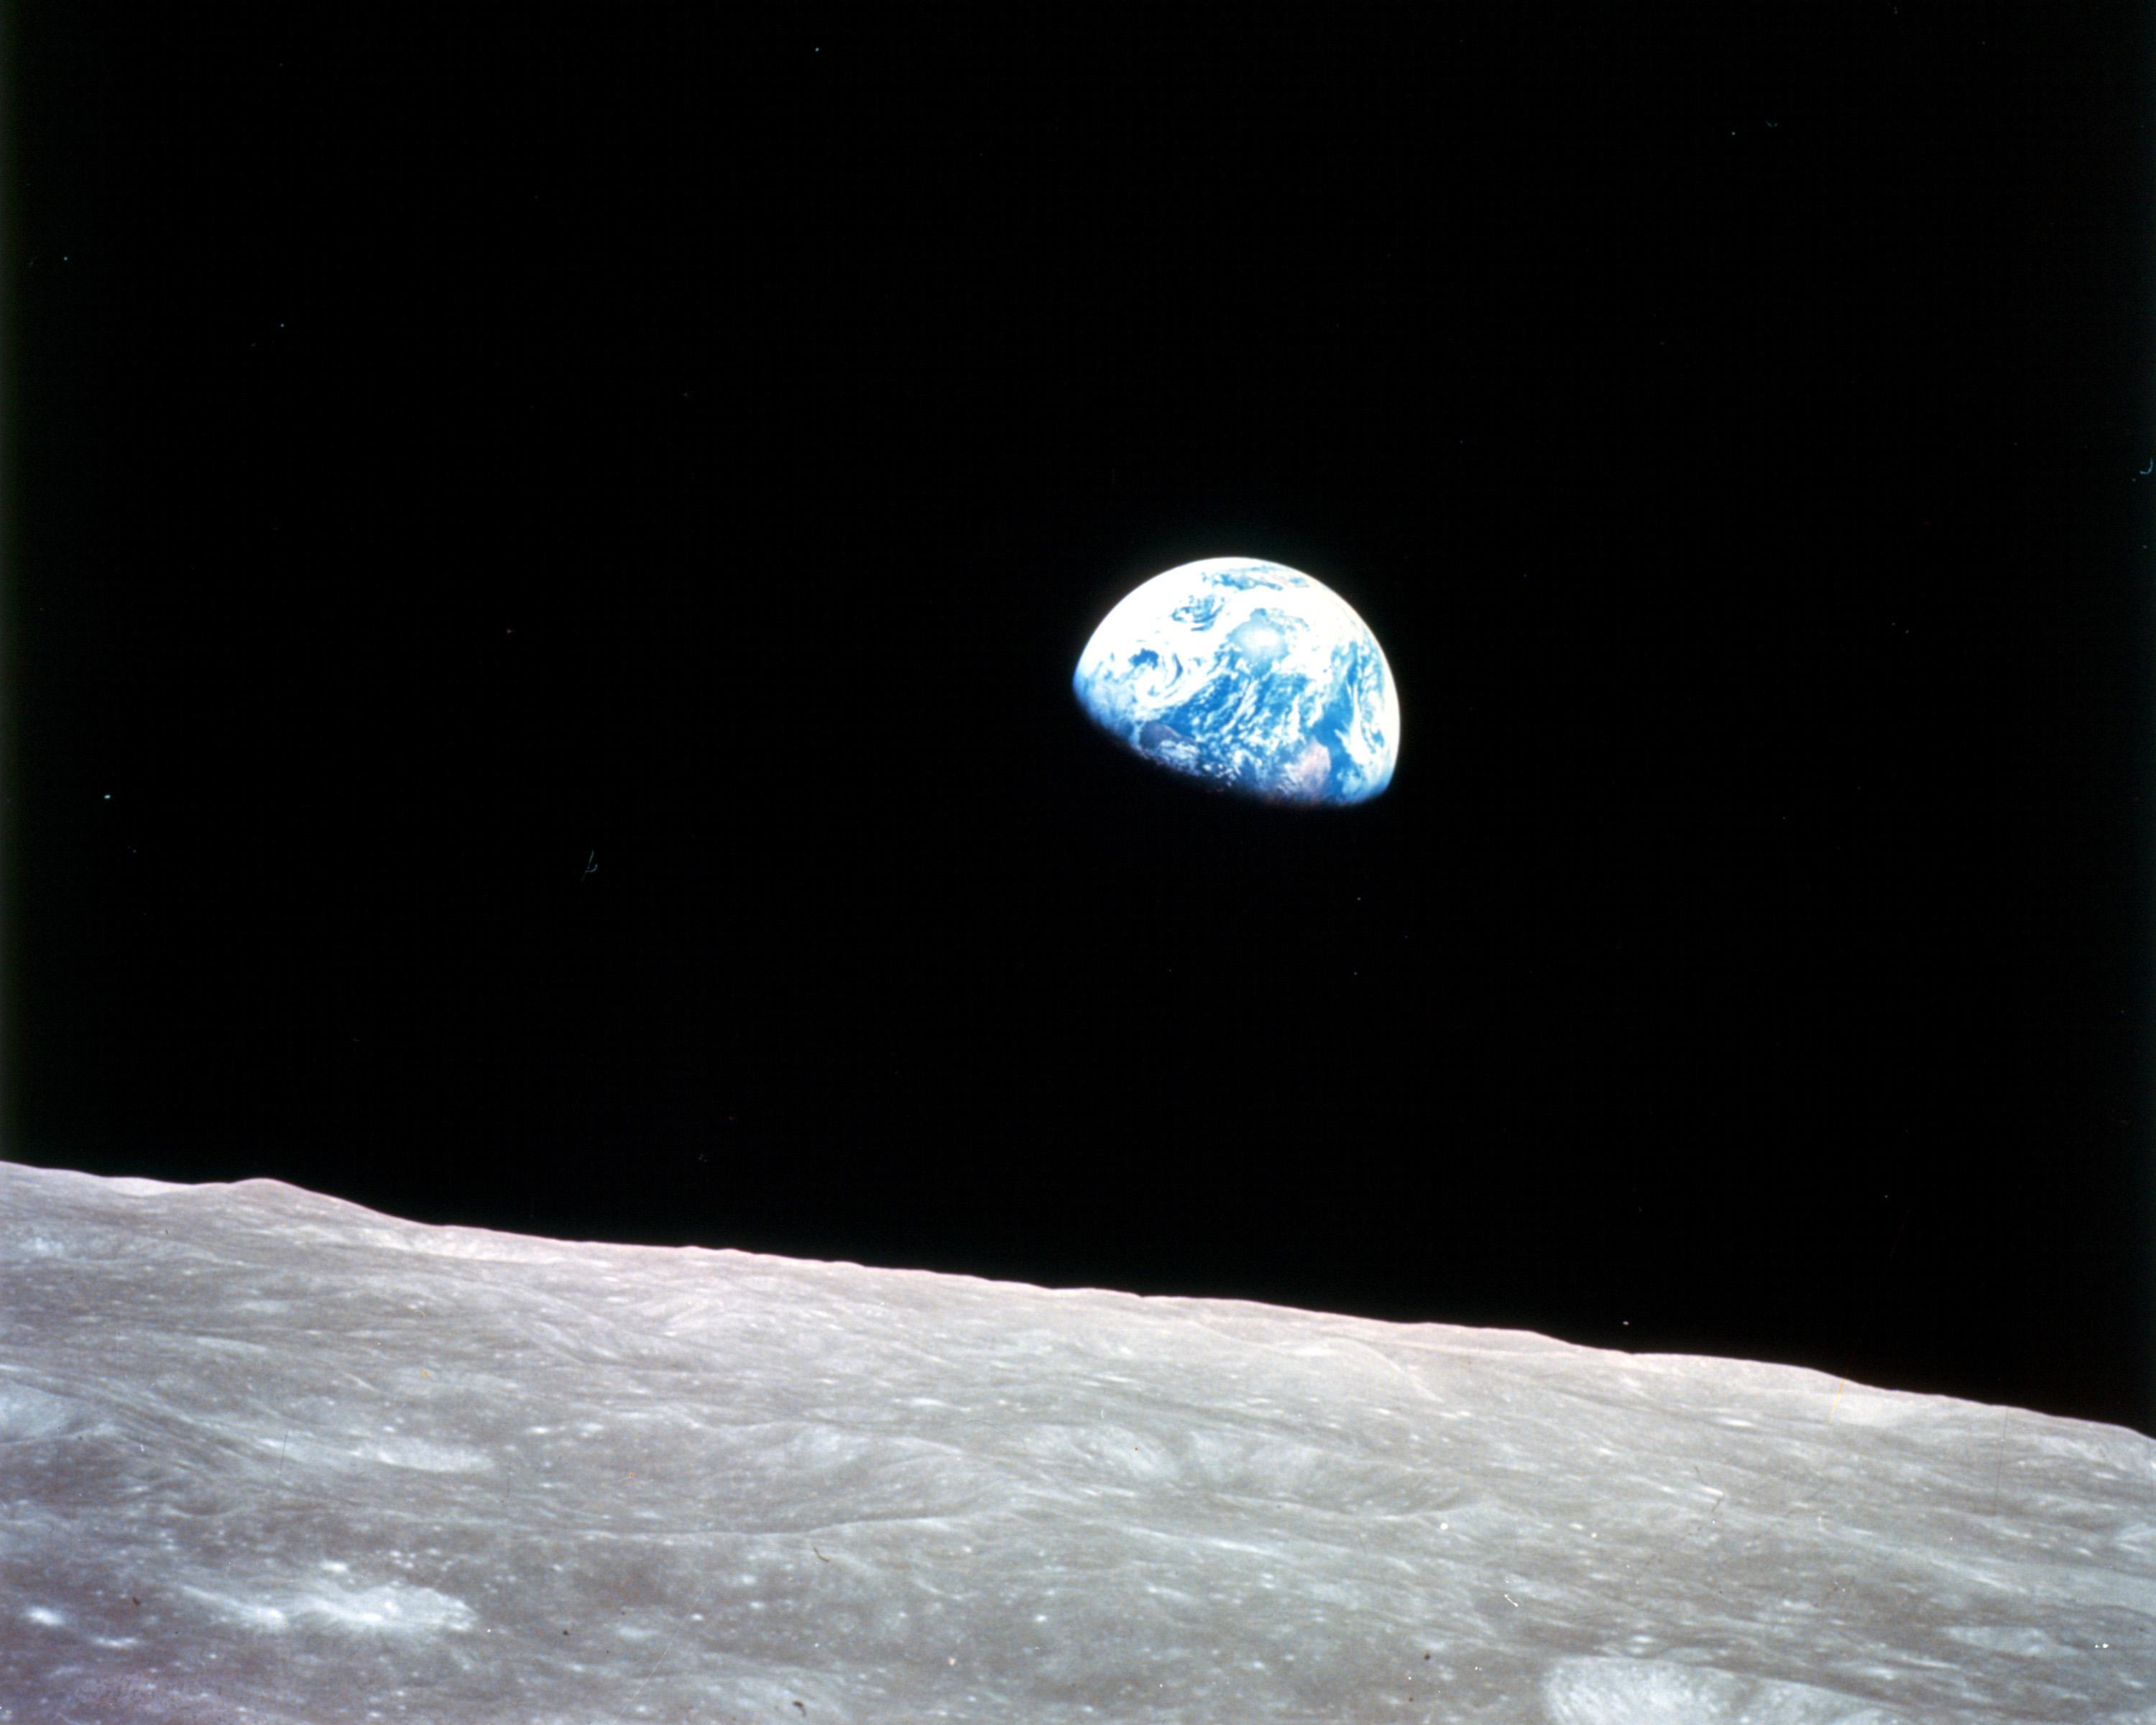 La vue emblématique de la Terre connue sous le nom de "Lever de terre" a été capturée pour la première fois par des astronautes lors de la mission en orbite lunaire Apollo 8 de la NASA le 11 décembre 2019.  24, 1968. La photographie est souvent associée à la propulsion du mouvement environnemental qui a conduit à la création du Jour de la Terre en 1970.